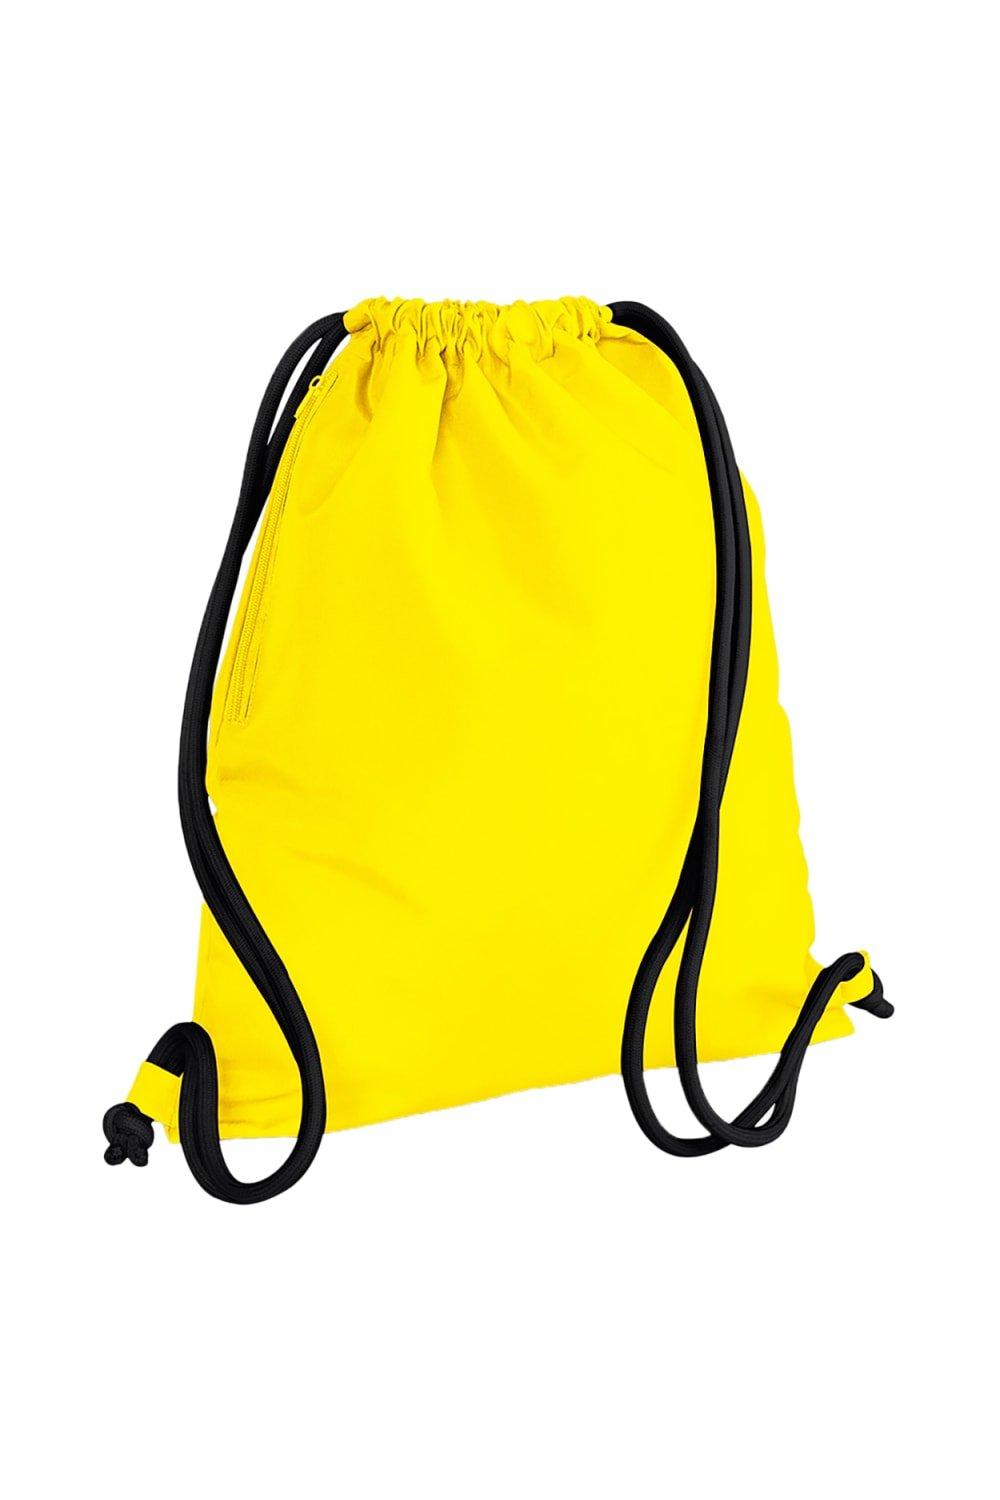 Сумка Icon на шнурке / Gymsac Bagbase, желтый сумка urban gymsac на шнурке sol s коралл